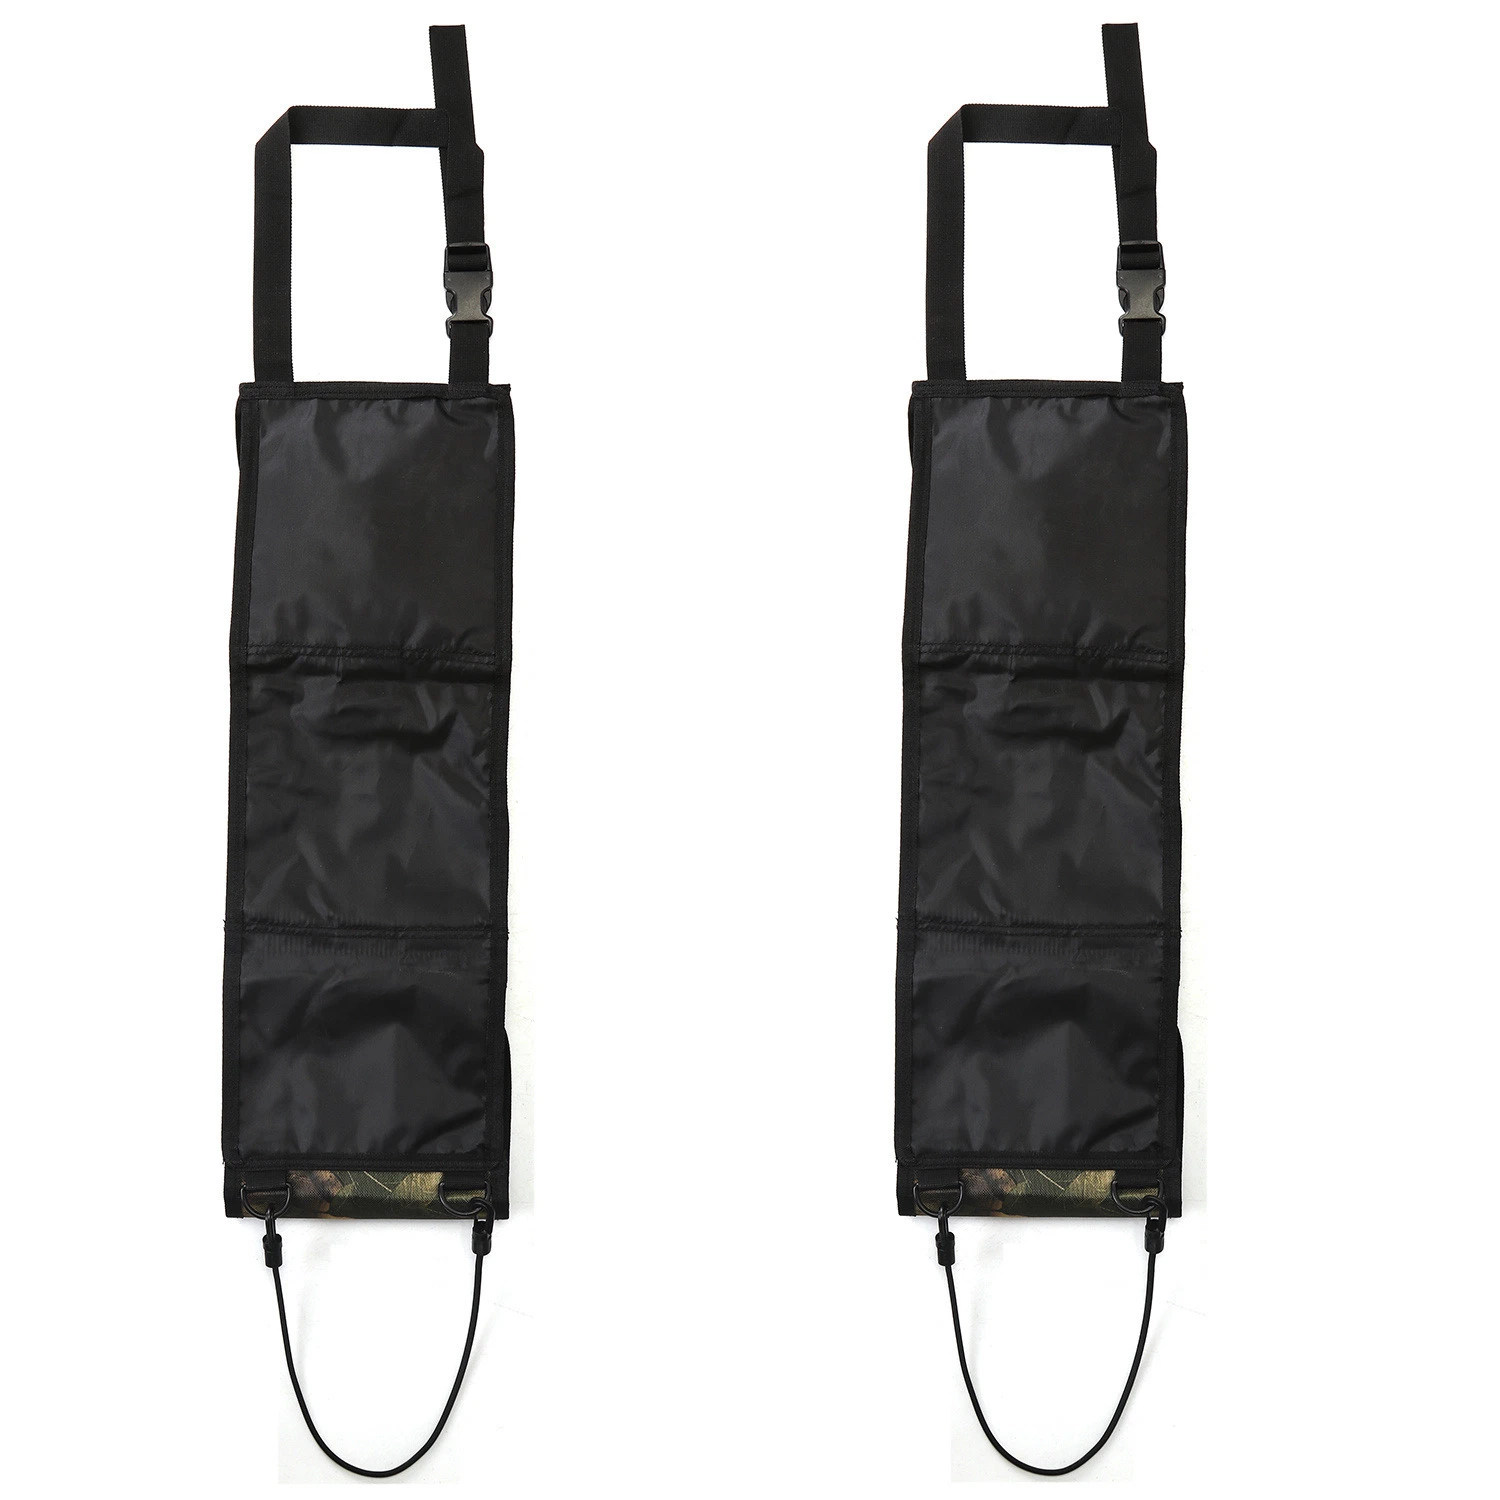 Автомобильные сумки для подстаканника мешки для подношения мешки для подпорки держатель для подстаканника Охота Сумка для хранения Bl13318